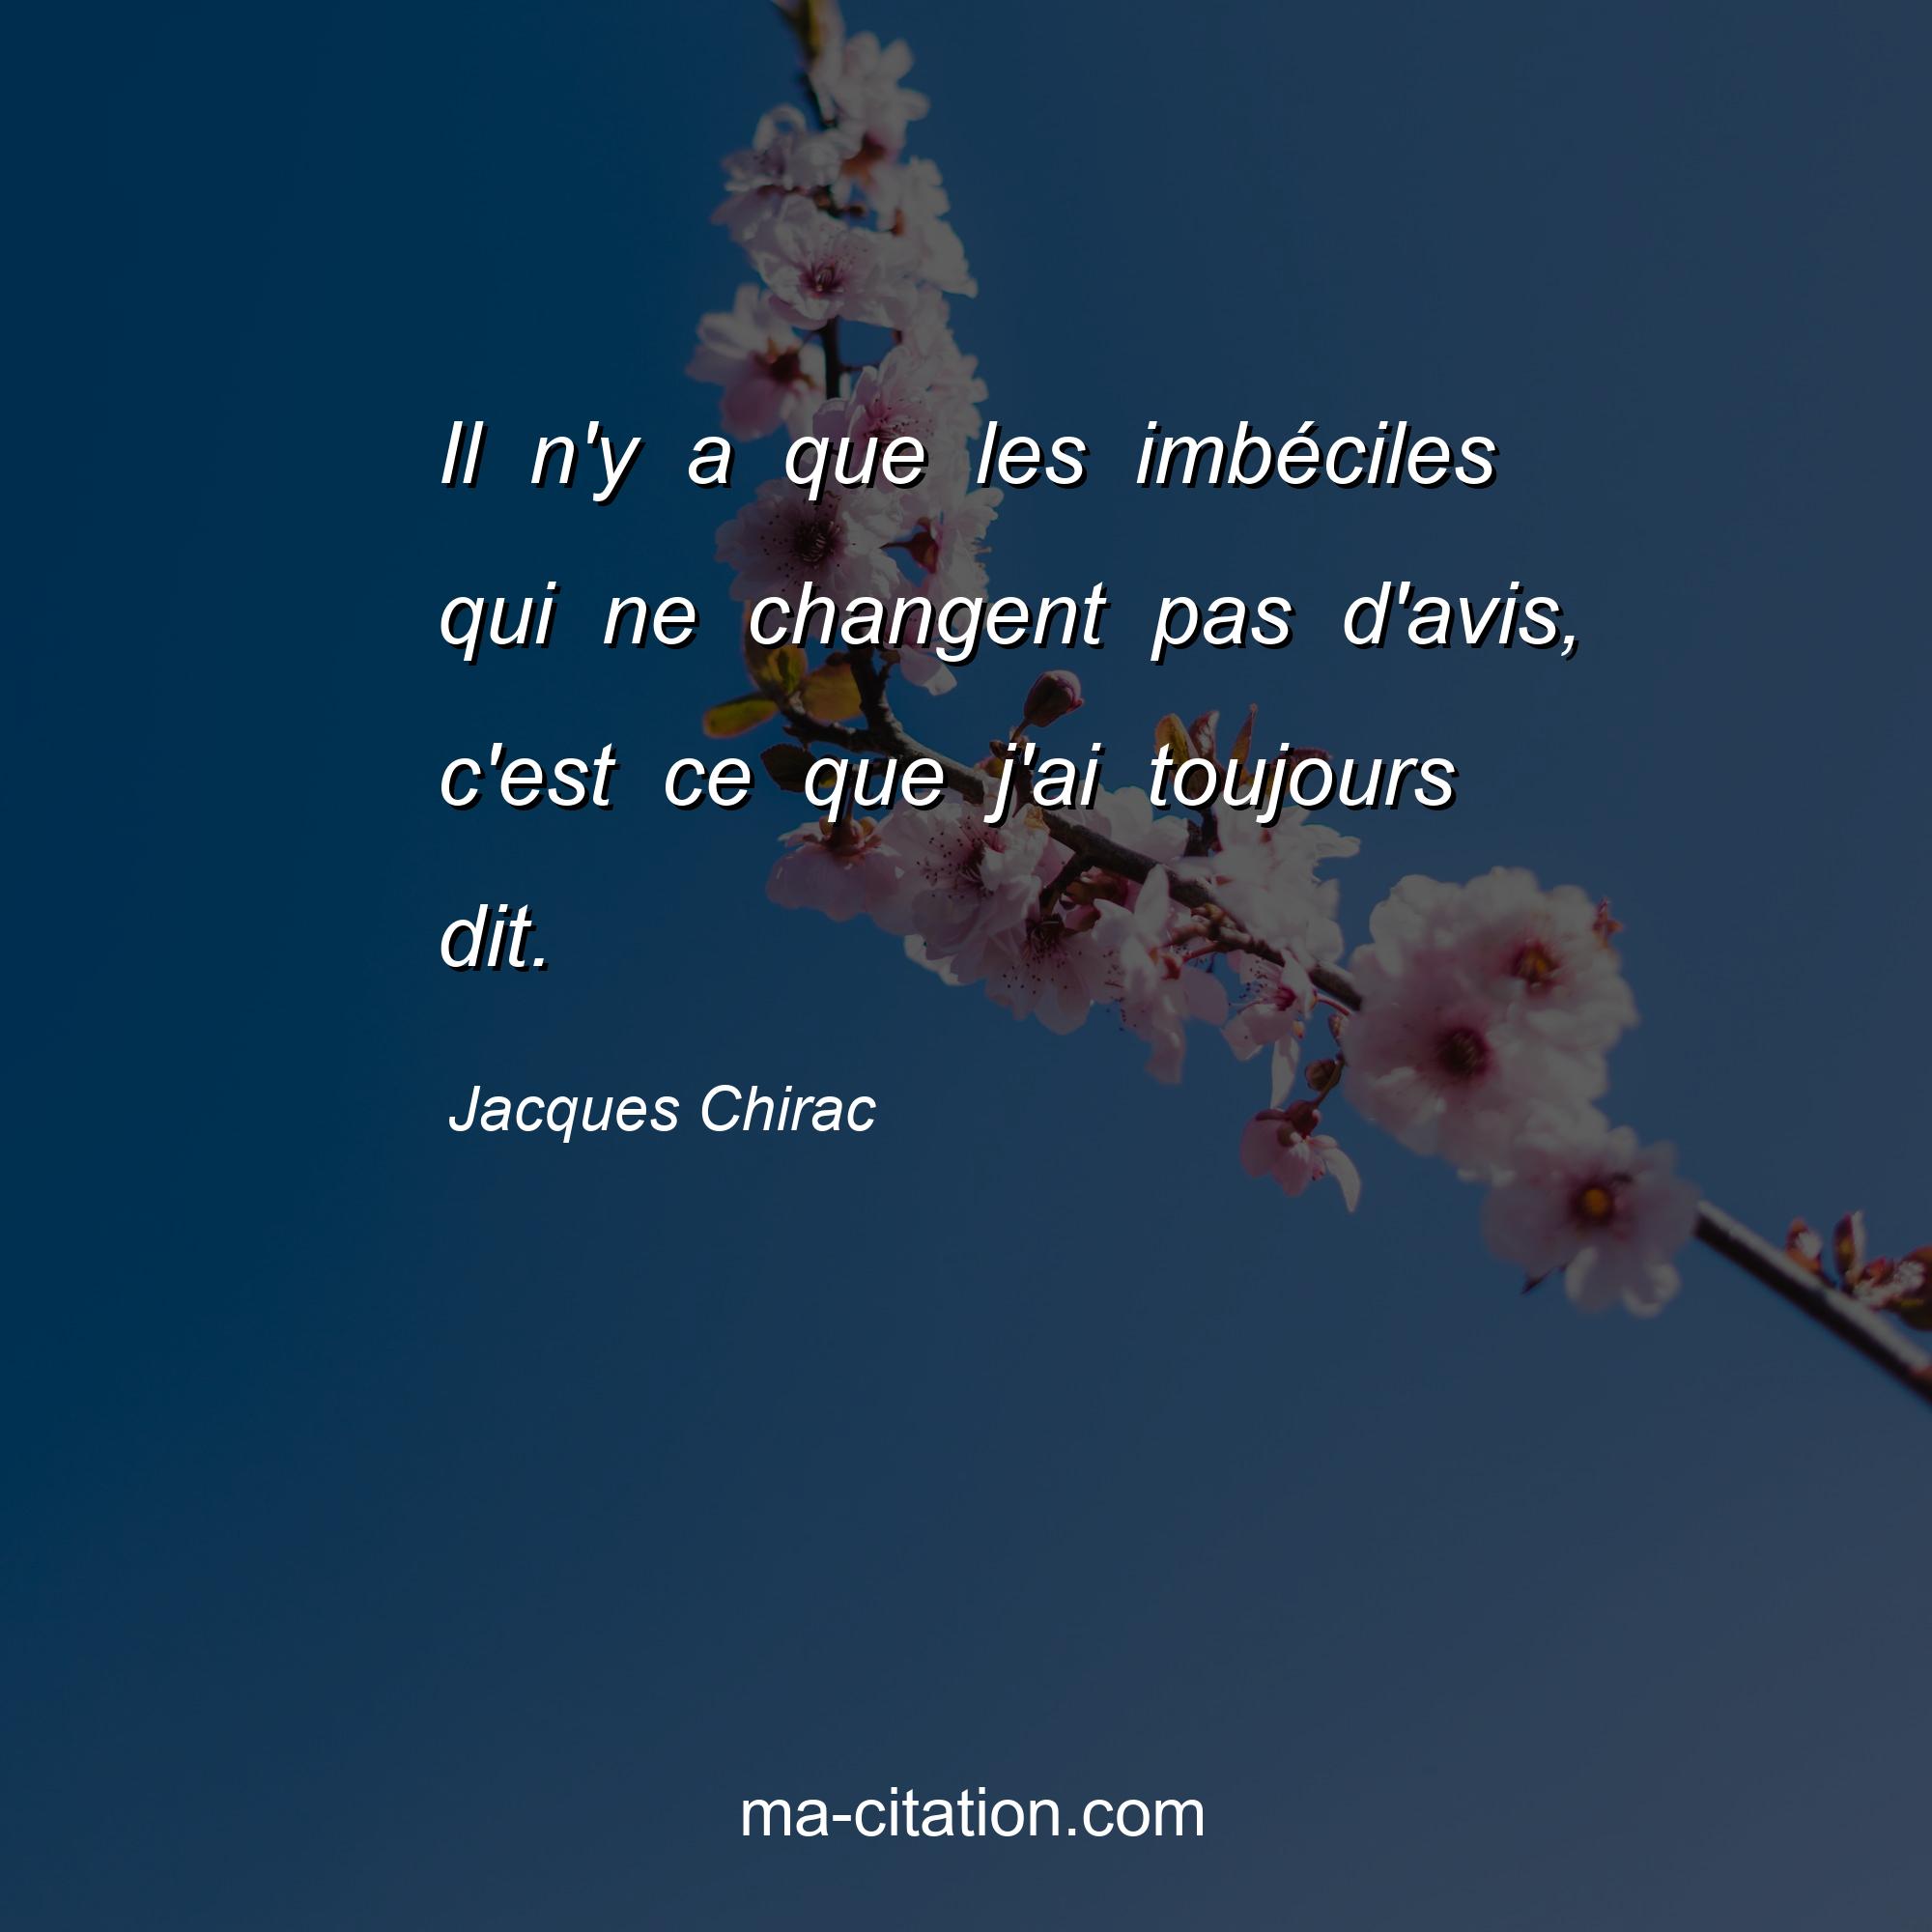 Jacques Chirac : Il n'y a que les imbéciles qui ne changent pas d'avis, c'est ce que j'ai toujours dit.